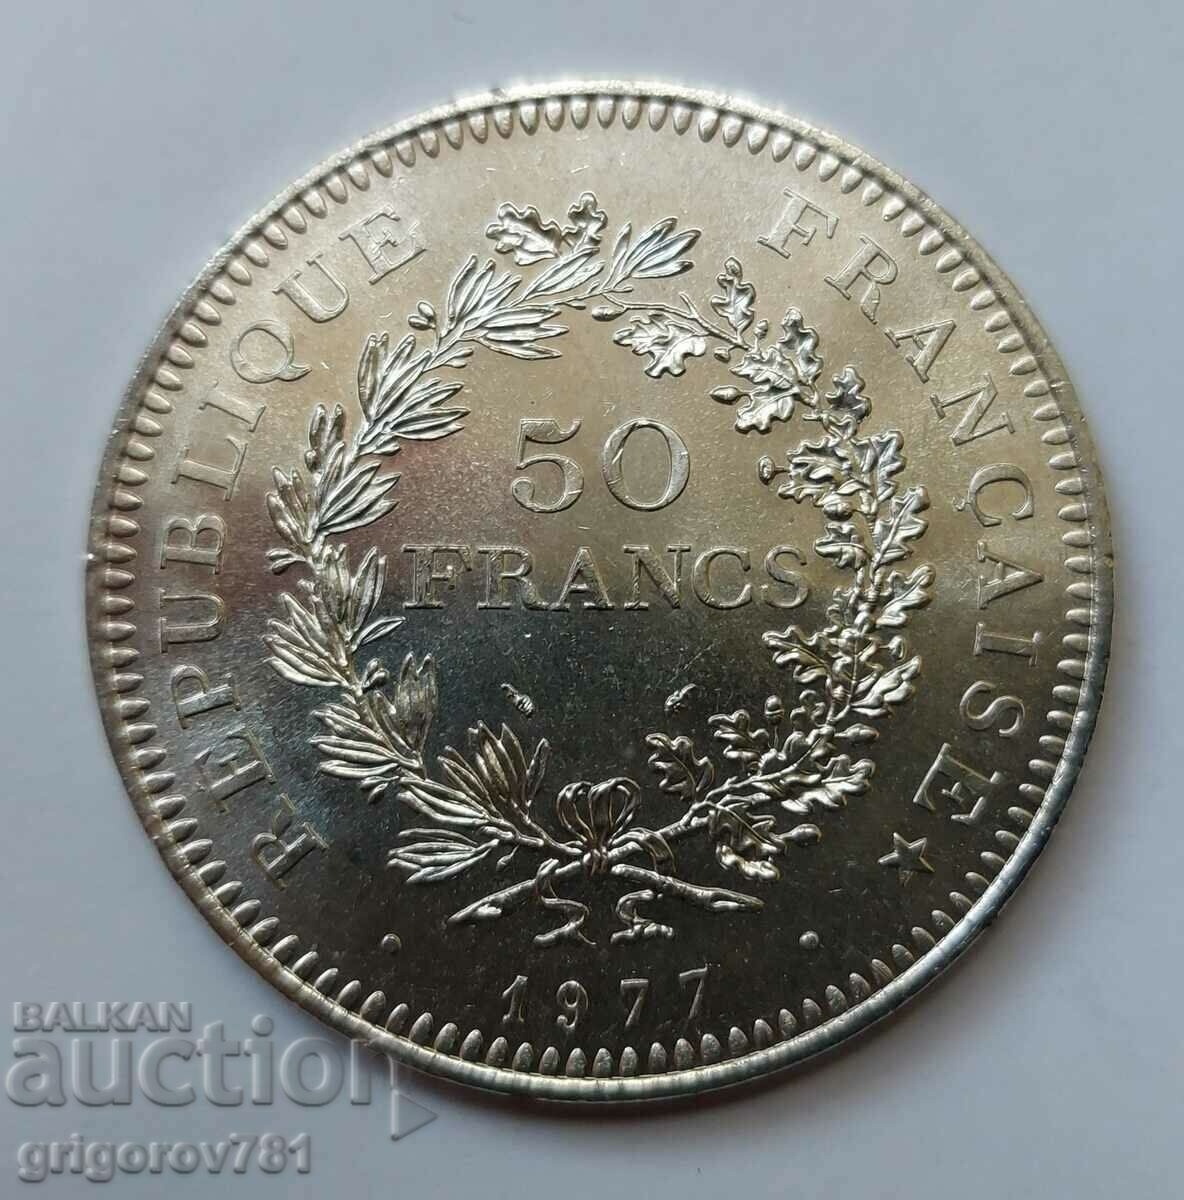 50 Φράγκα Ασήμι Γαλλία 1977 - Ασημένιο νόμισμα #35